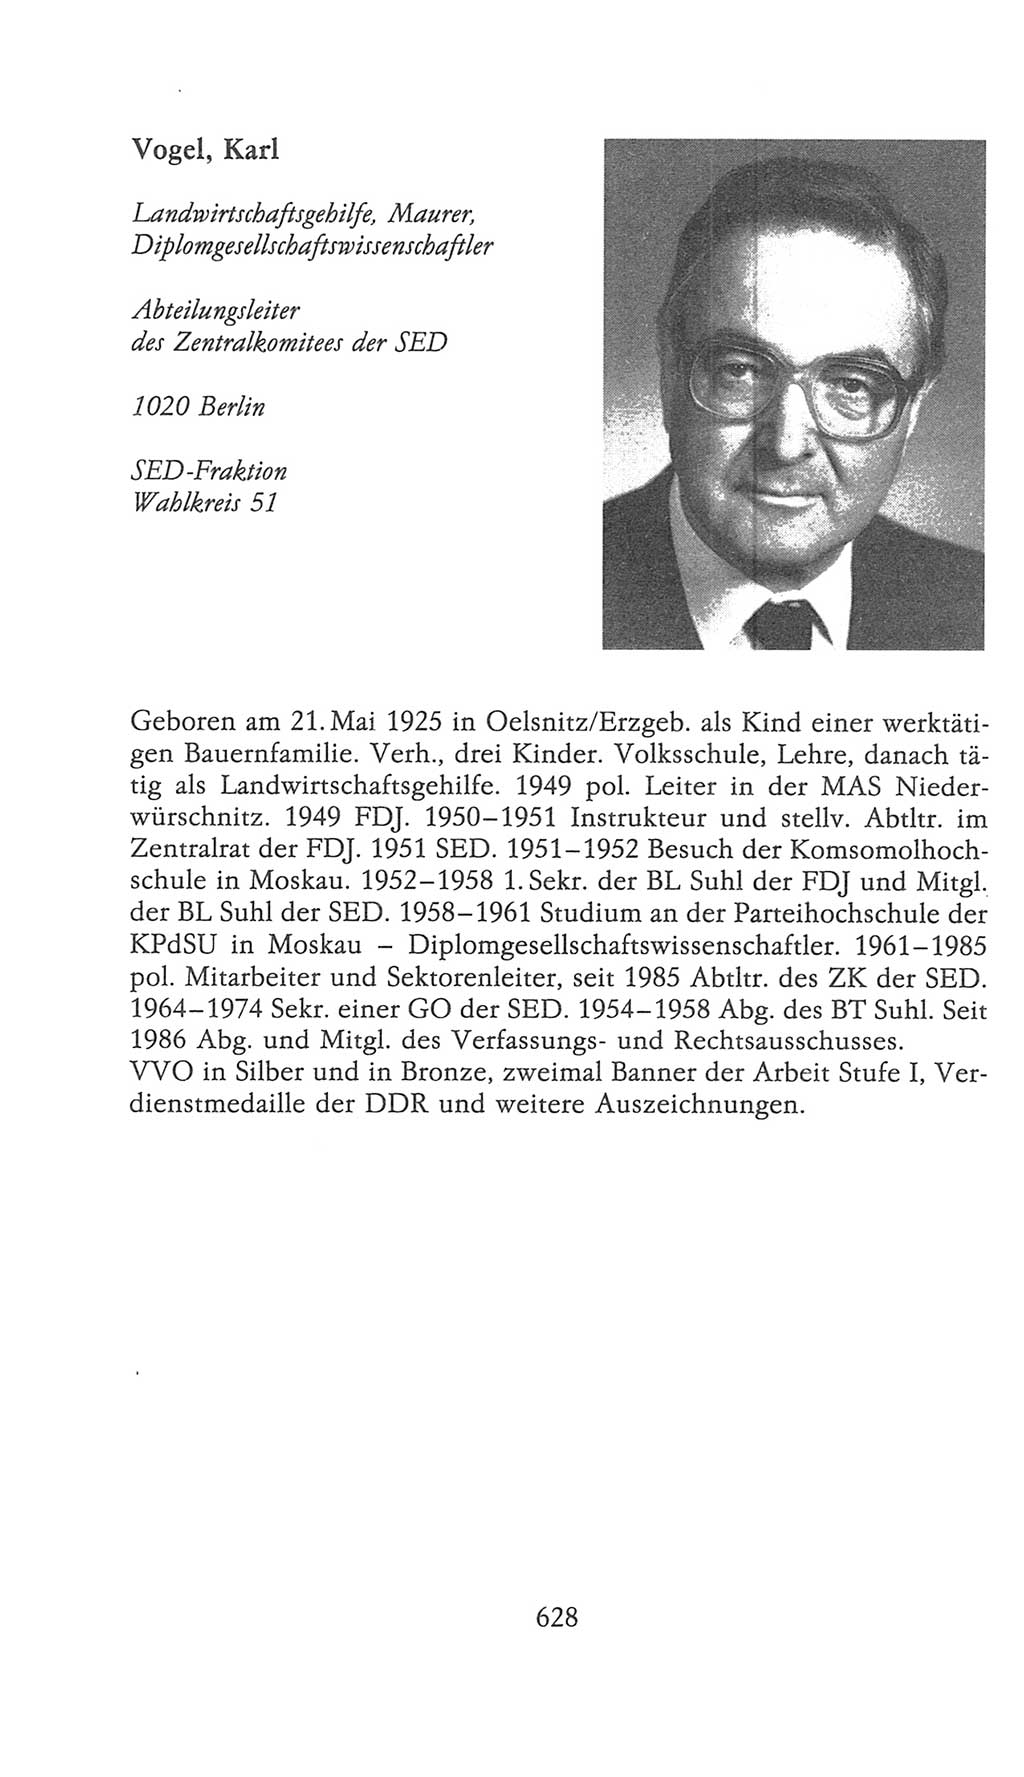 Volkskammer (VK) der Deutschen Demokratischen Republik (DDR), 9. Wahlperiode 1986-1990, Seite 628 (VK. DDR 9. WP. 1986-1990, S. 628)